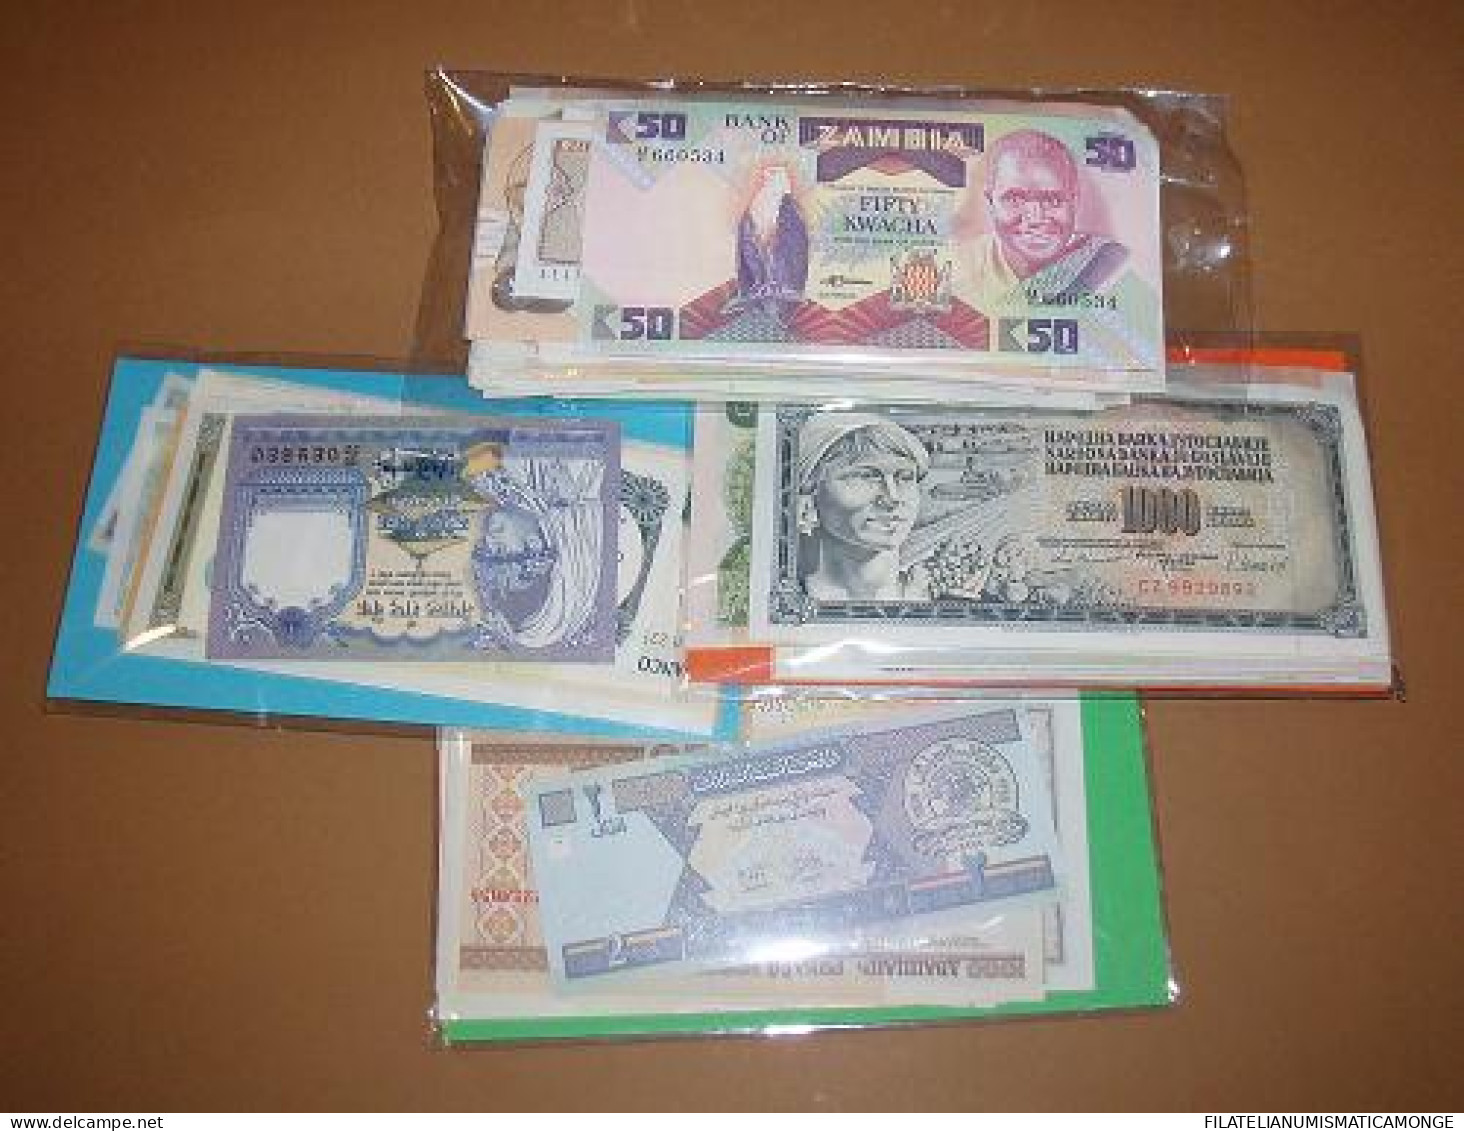  Offer - Lot Banknotes - Paqueteria  Mundial 150 Billetes Diferentes / Foto Gen - Mezclas - Billetes